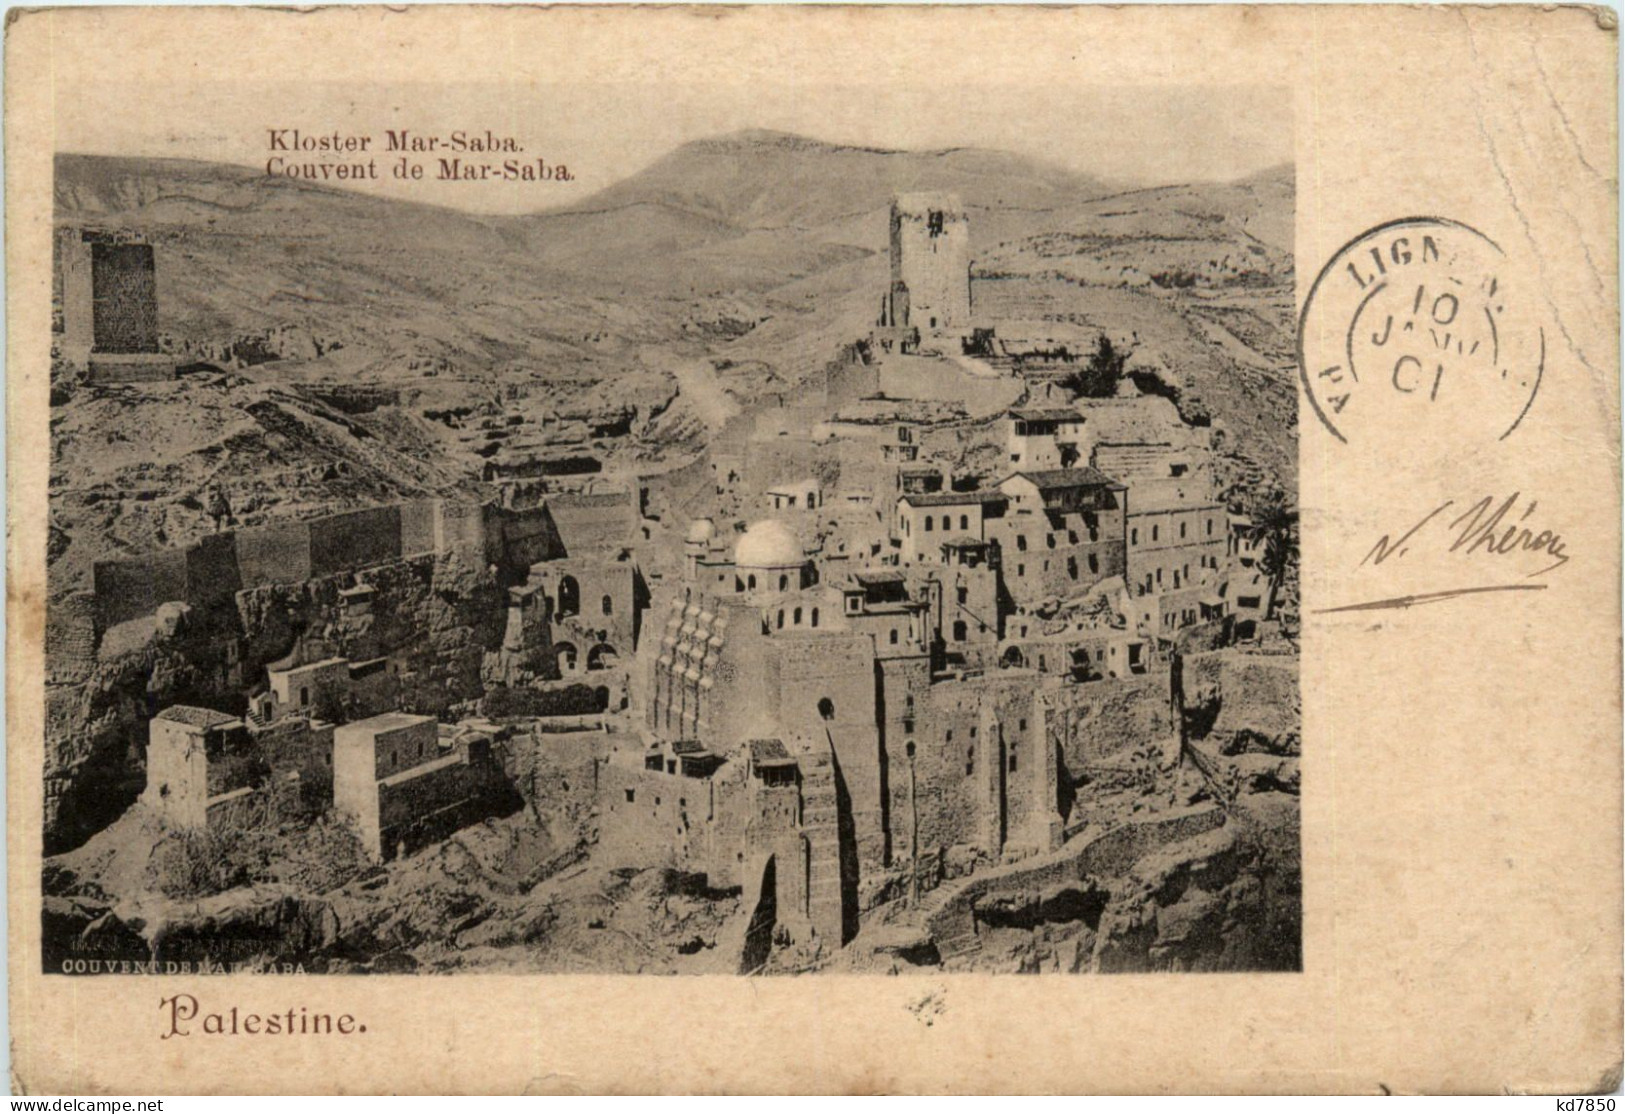 Kloster Mar-Saba - Palestine